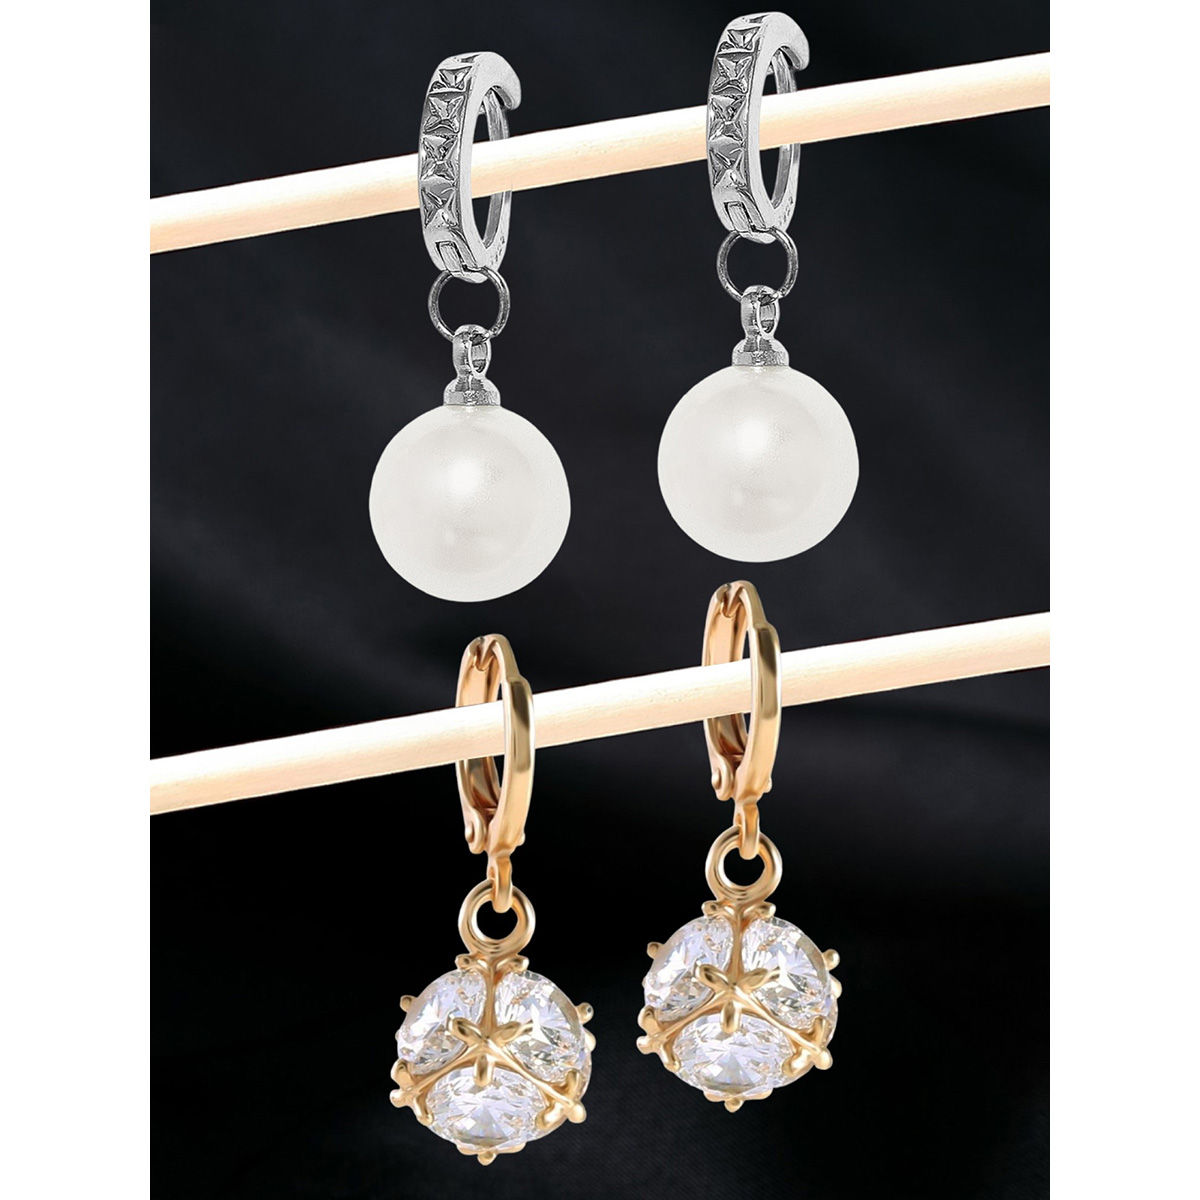 Buy Shegirl Boho Shell Earrings Delicate Dangle Drop Earrings Gold Shell  Earrings Fashion Jewelry for Women and Girls Gold at Amazonin